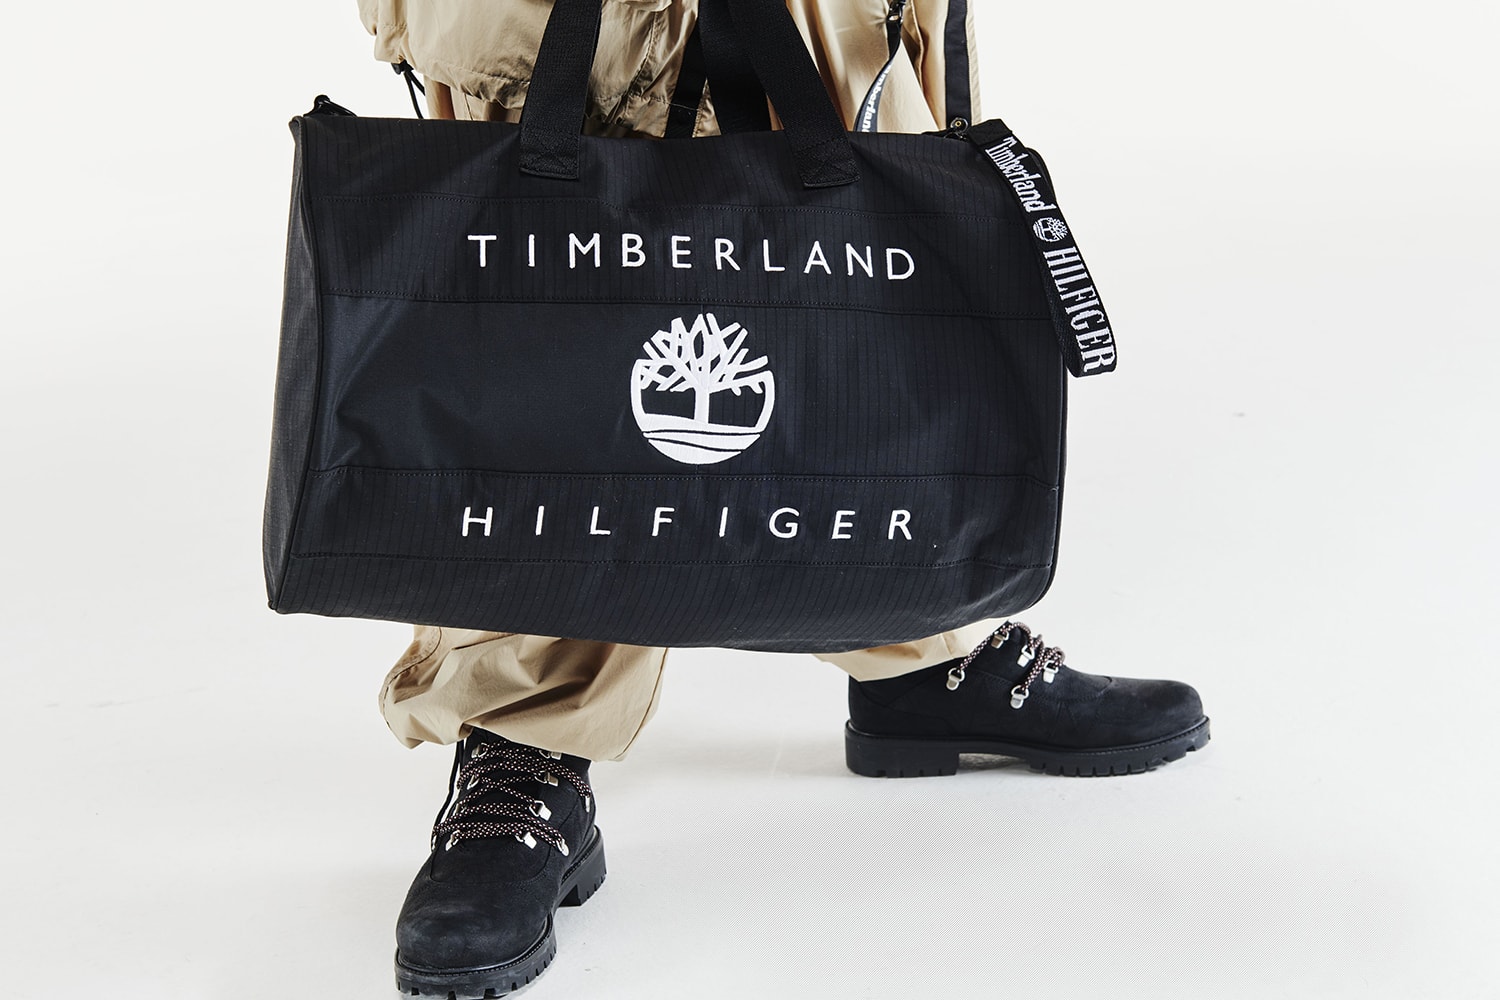 타미 힐피거, 팀버랜드와 함께한 두 번째 컬렉션 공개 tommy hilfiger timberland collaboration